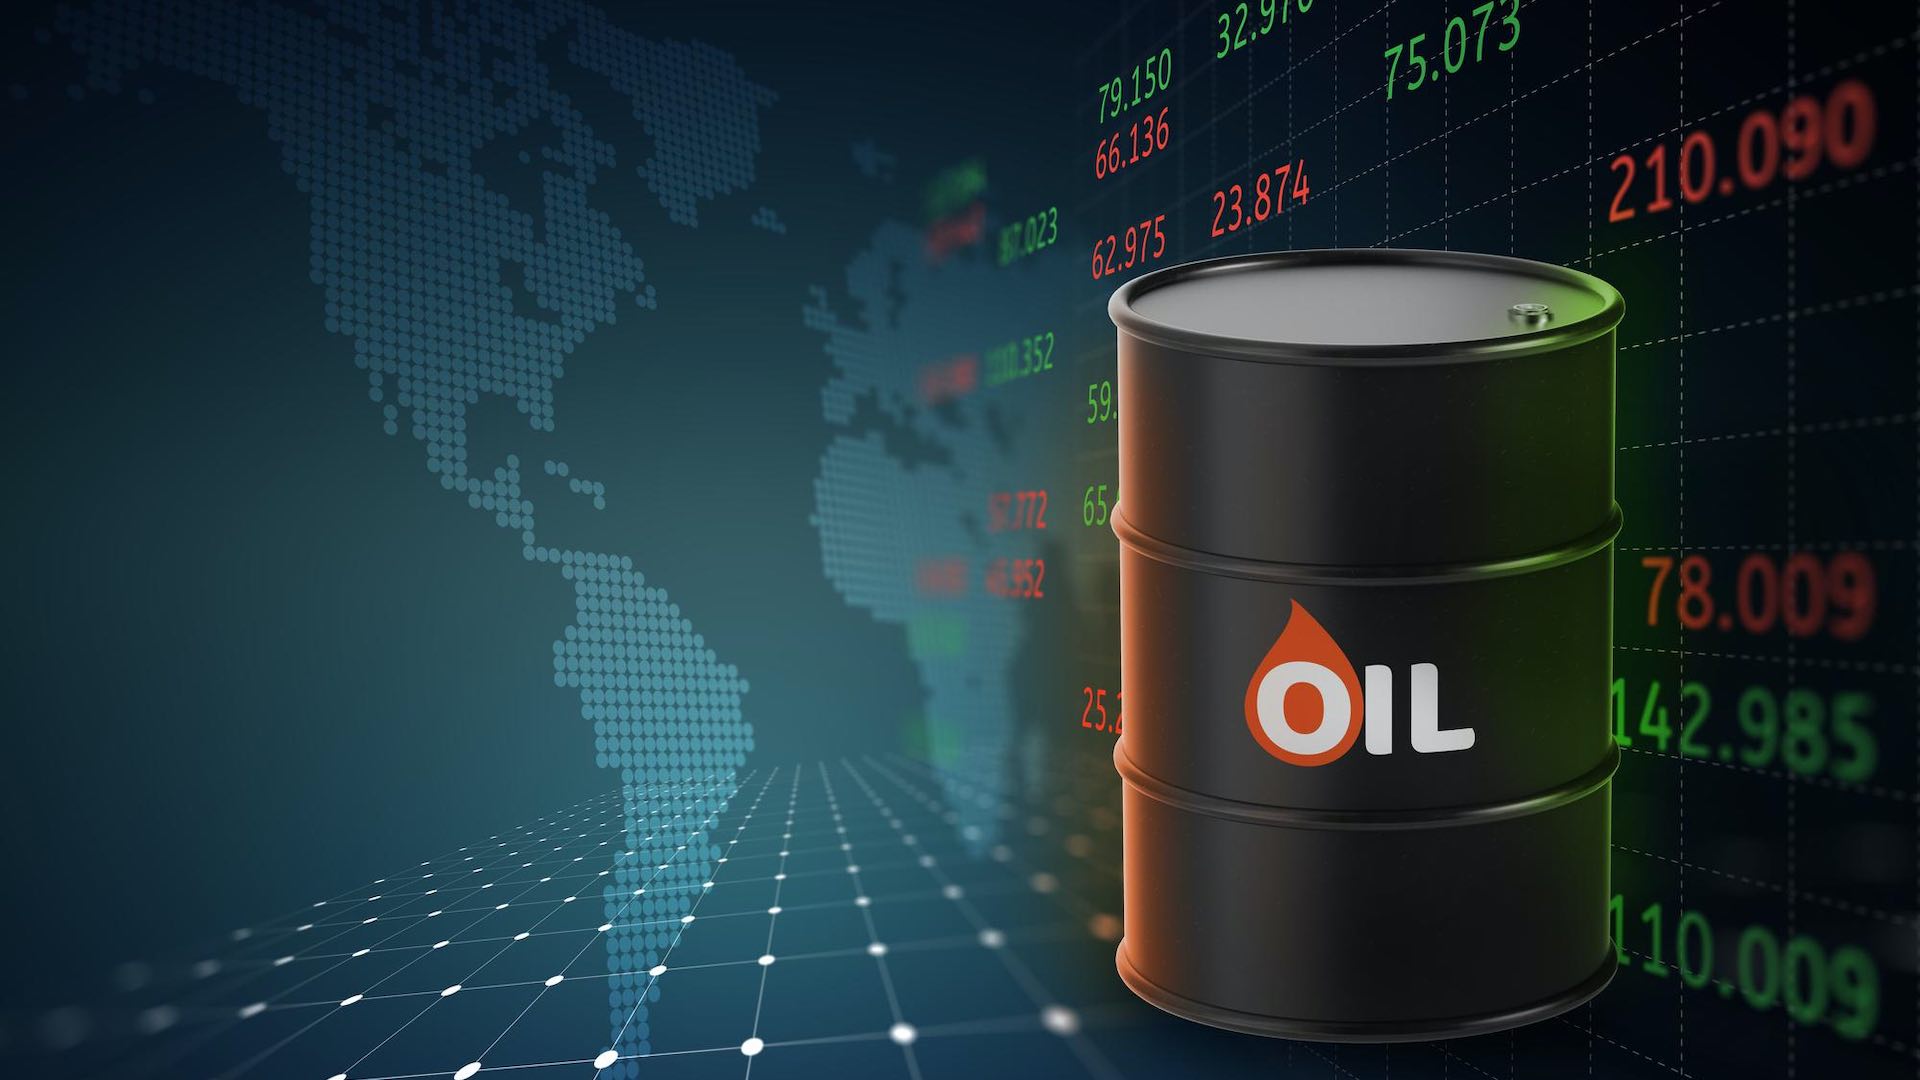 اوپیک کی رپورٹ میں مستحکم مانگ کو نمایاں کرنے کے ساتھ ہی تیل کی قیمت بڑھ رہی ہے۔